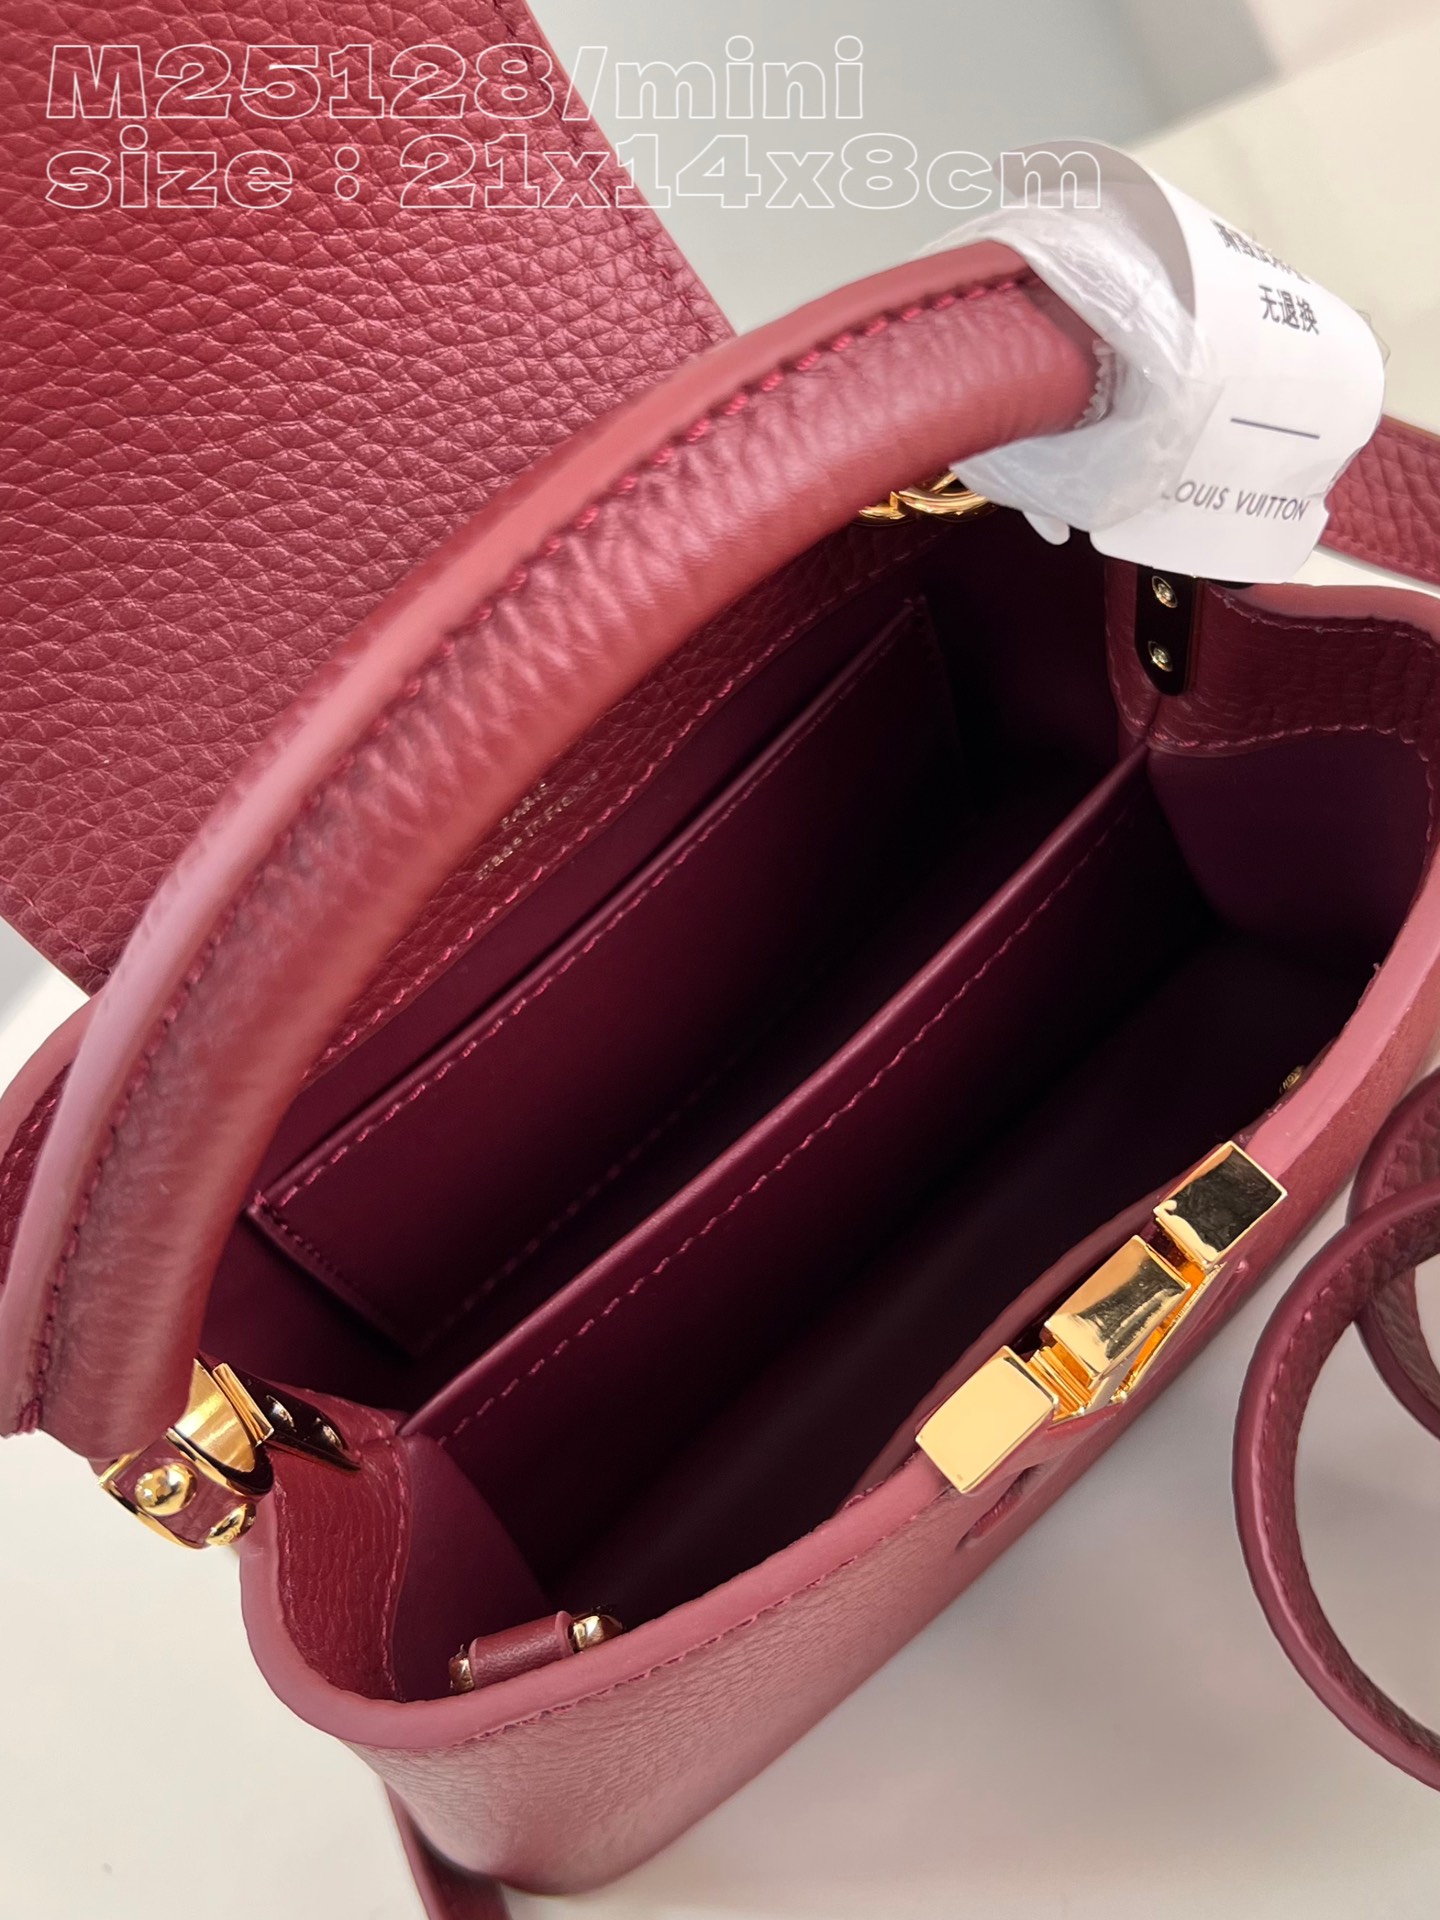 顶级原单M25128紫红/迷你本款Capucines迷你手袋展露细腻Taurillon皮革的微妙莹泽点缀